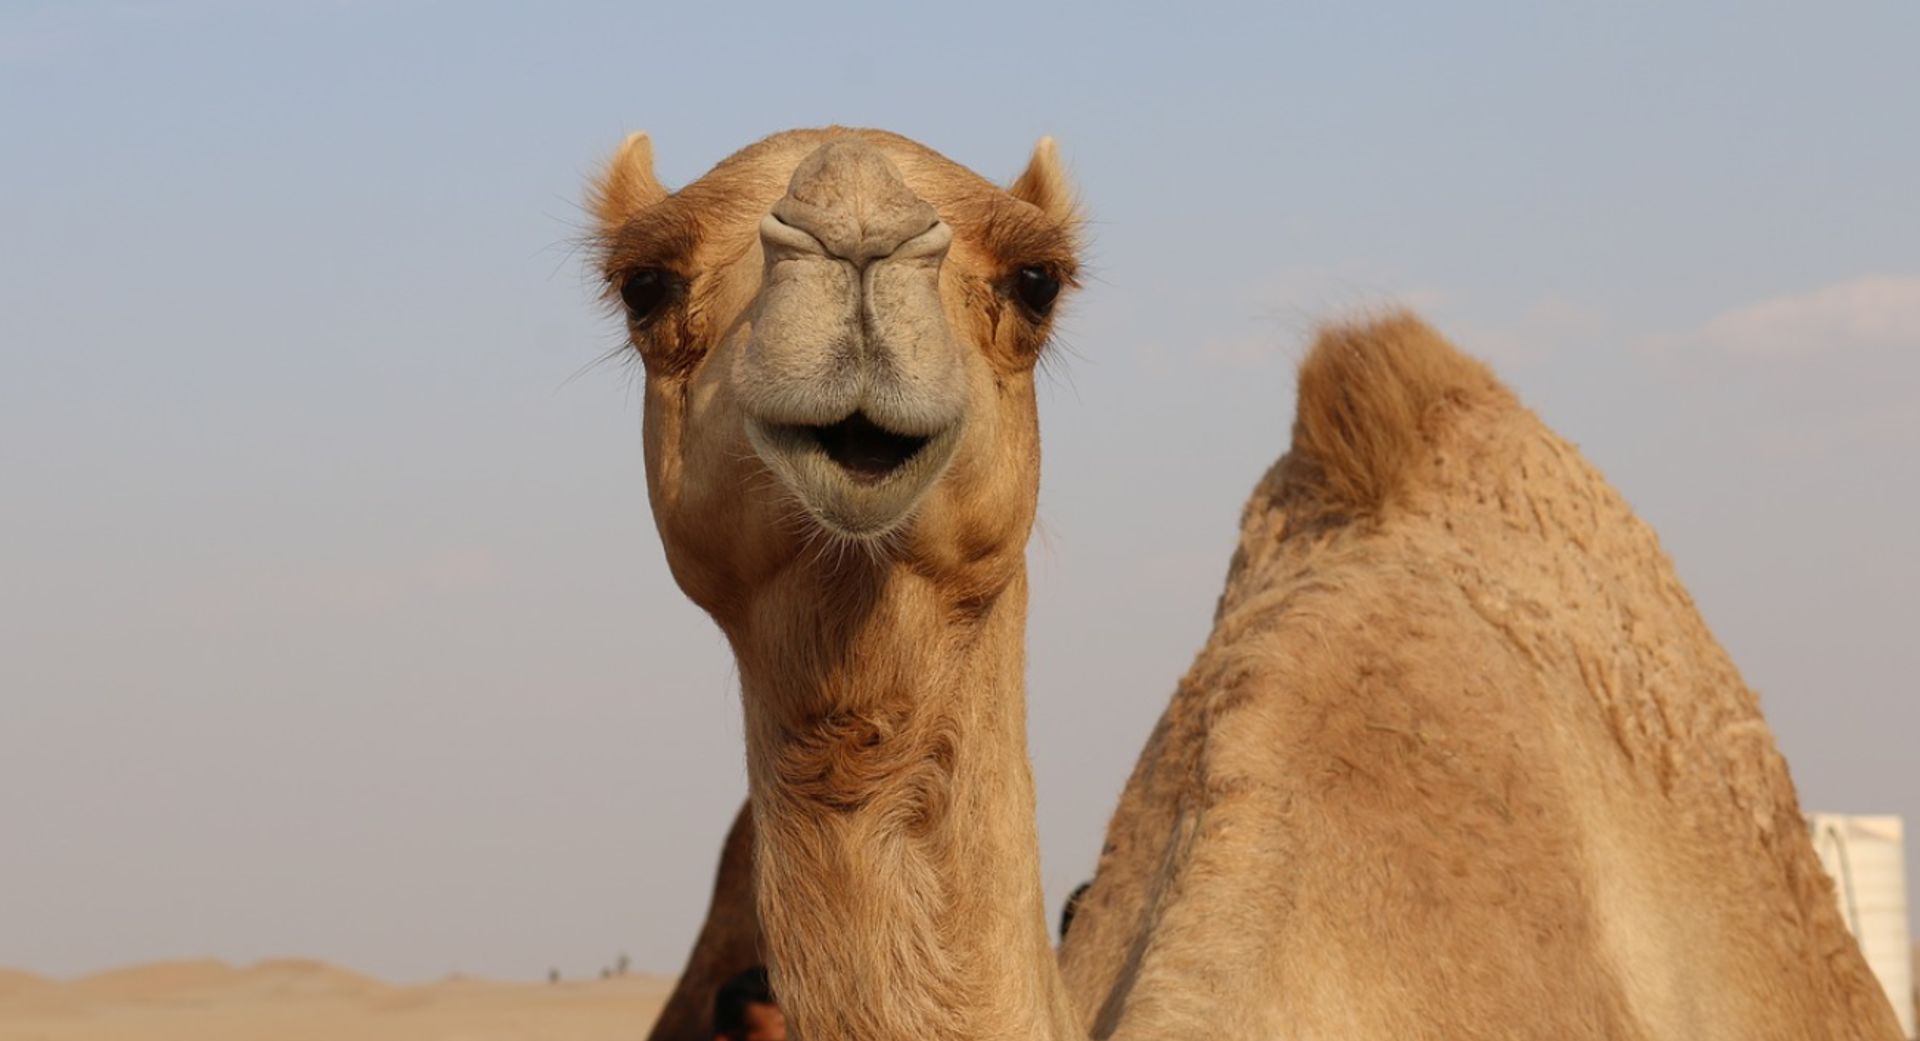 Herhaald winter koffer Australië schiet 10.000 kamelen af 'omdat ze te veel water drinken' - Joop  - BNNVARA